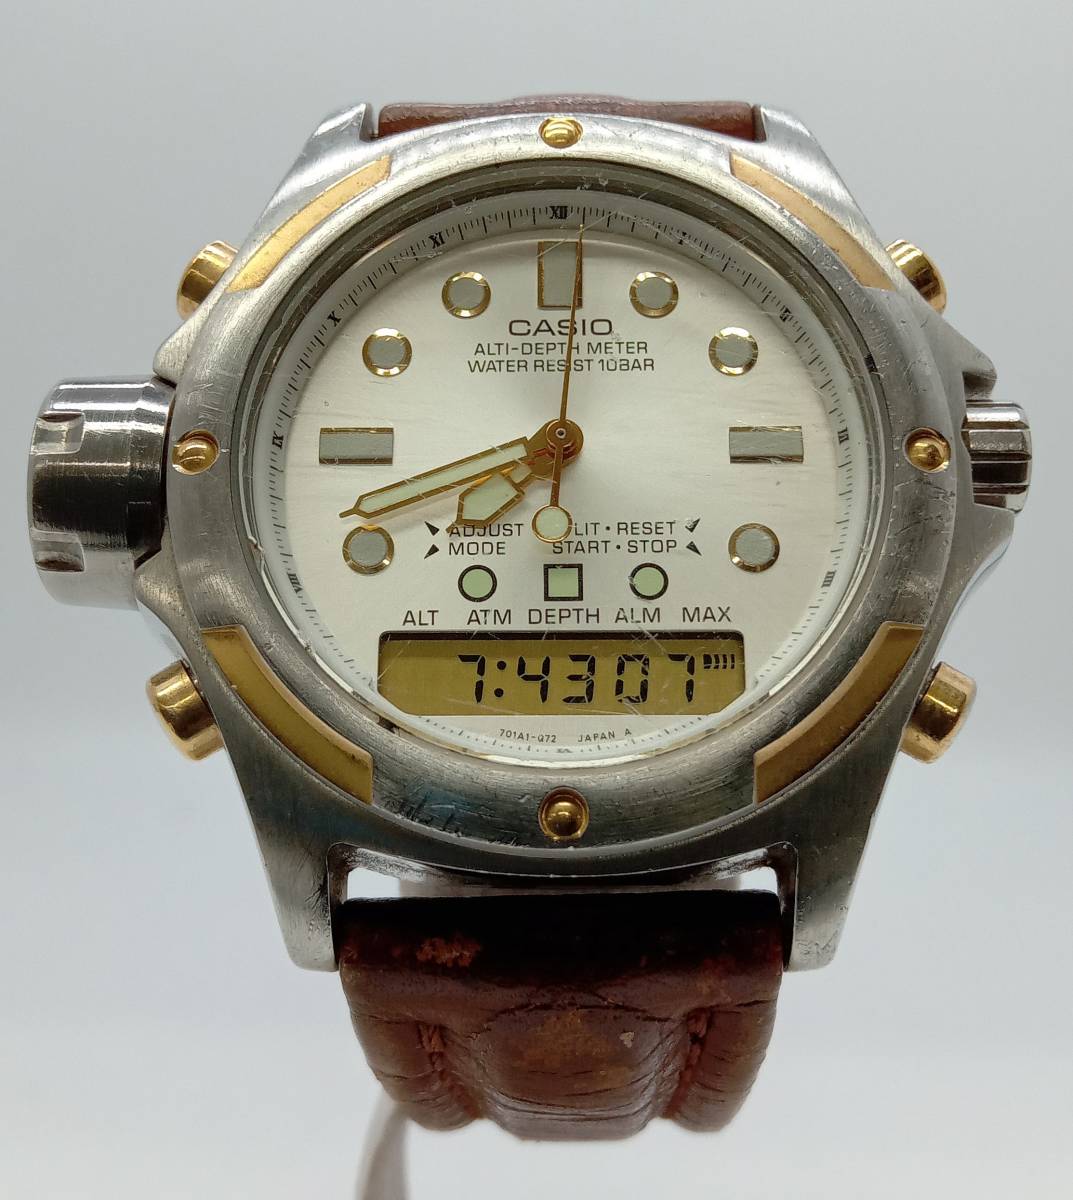 CASIO ALT-DEPTH METER AW-710 デジアナ 革ベルト 銀文字盤 クオーツ デジアナ 腕時計